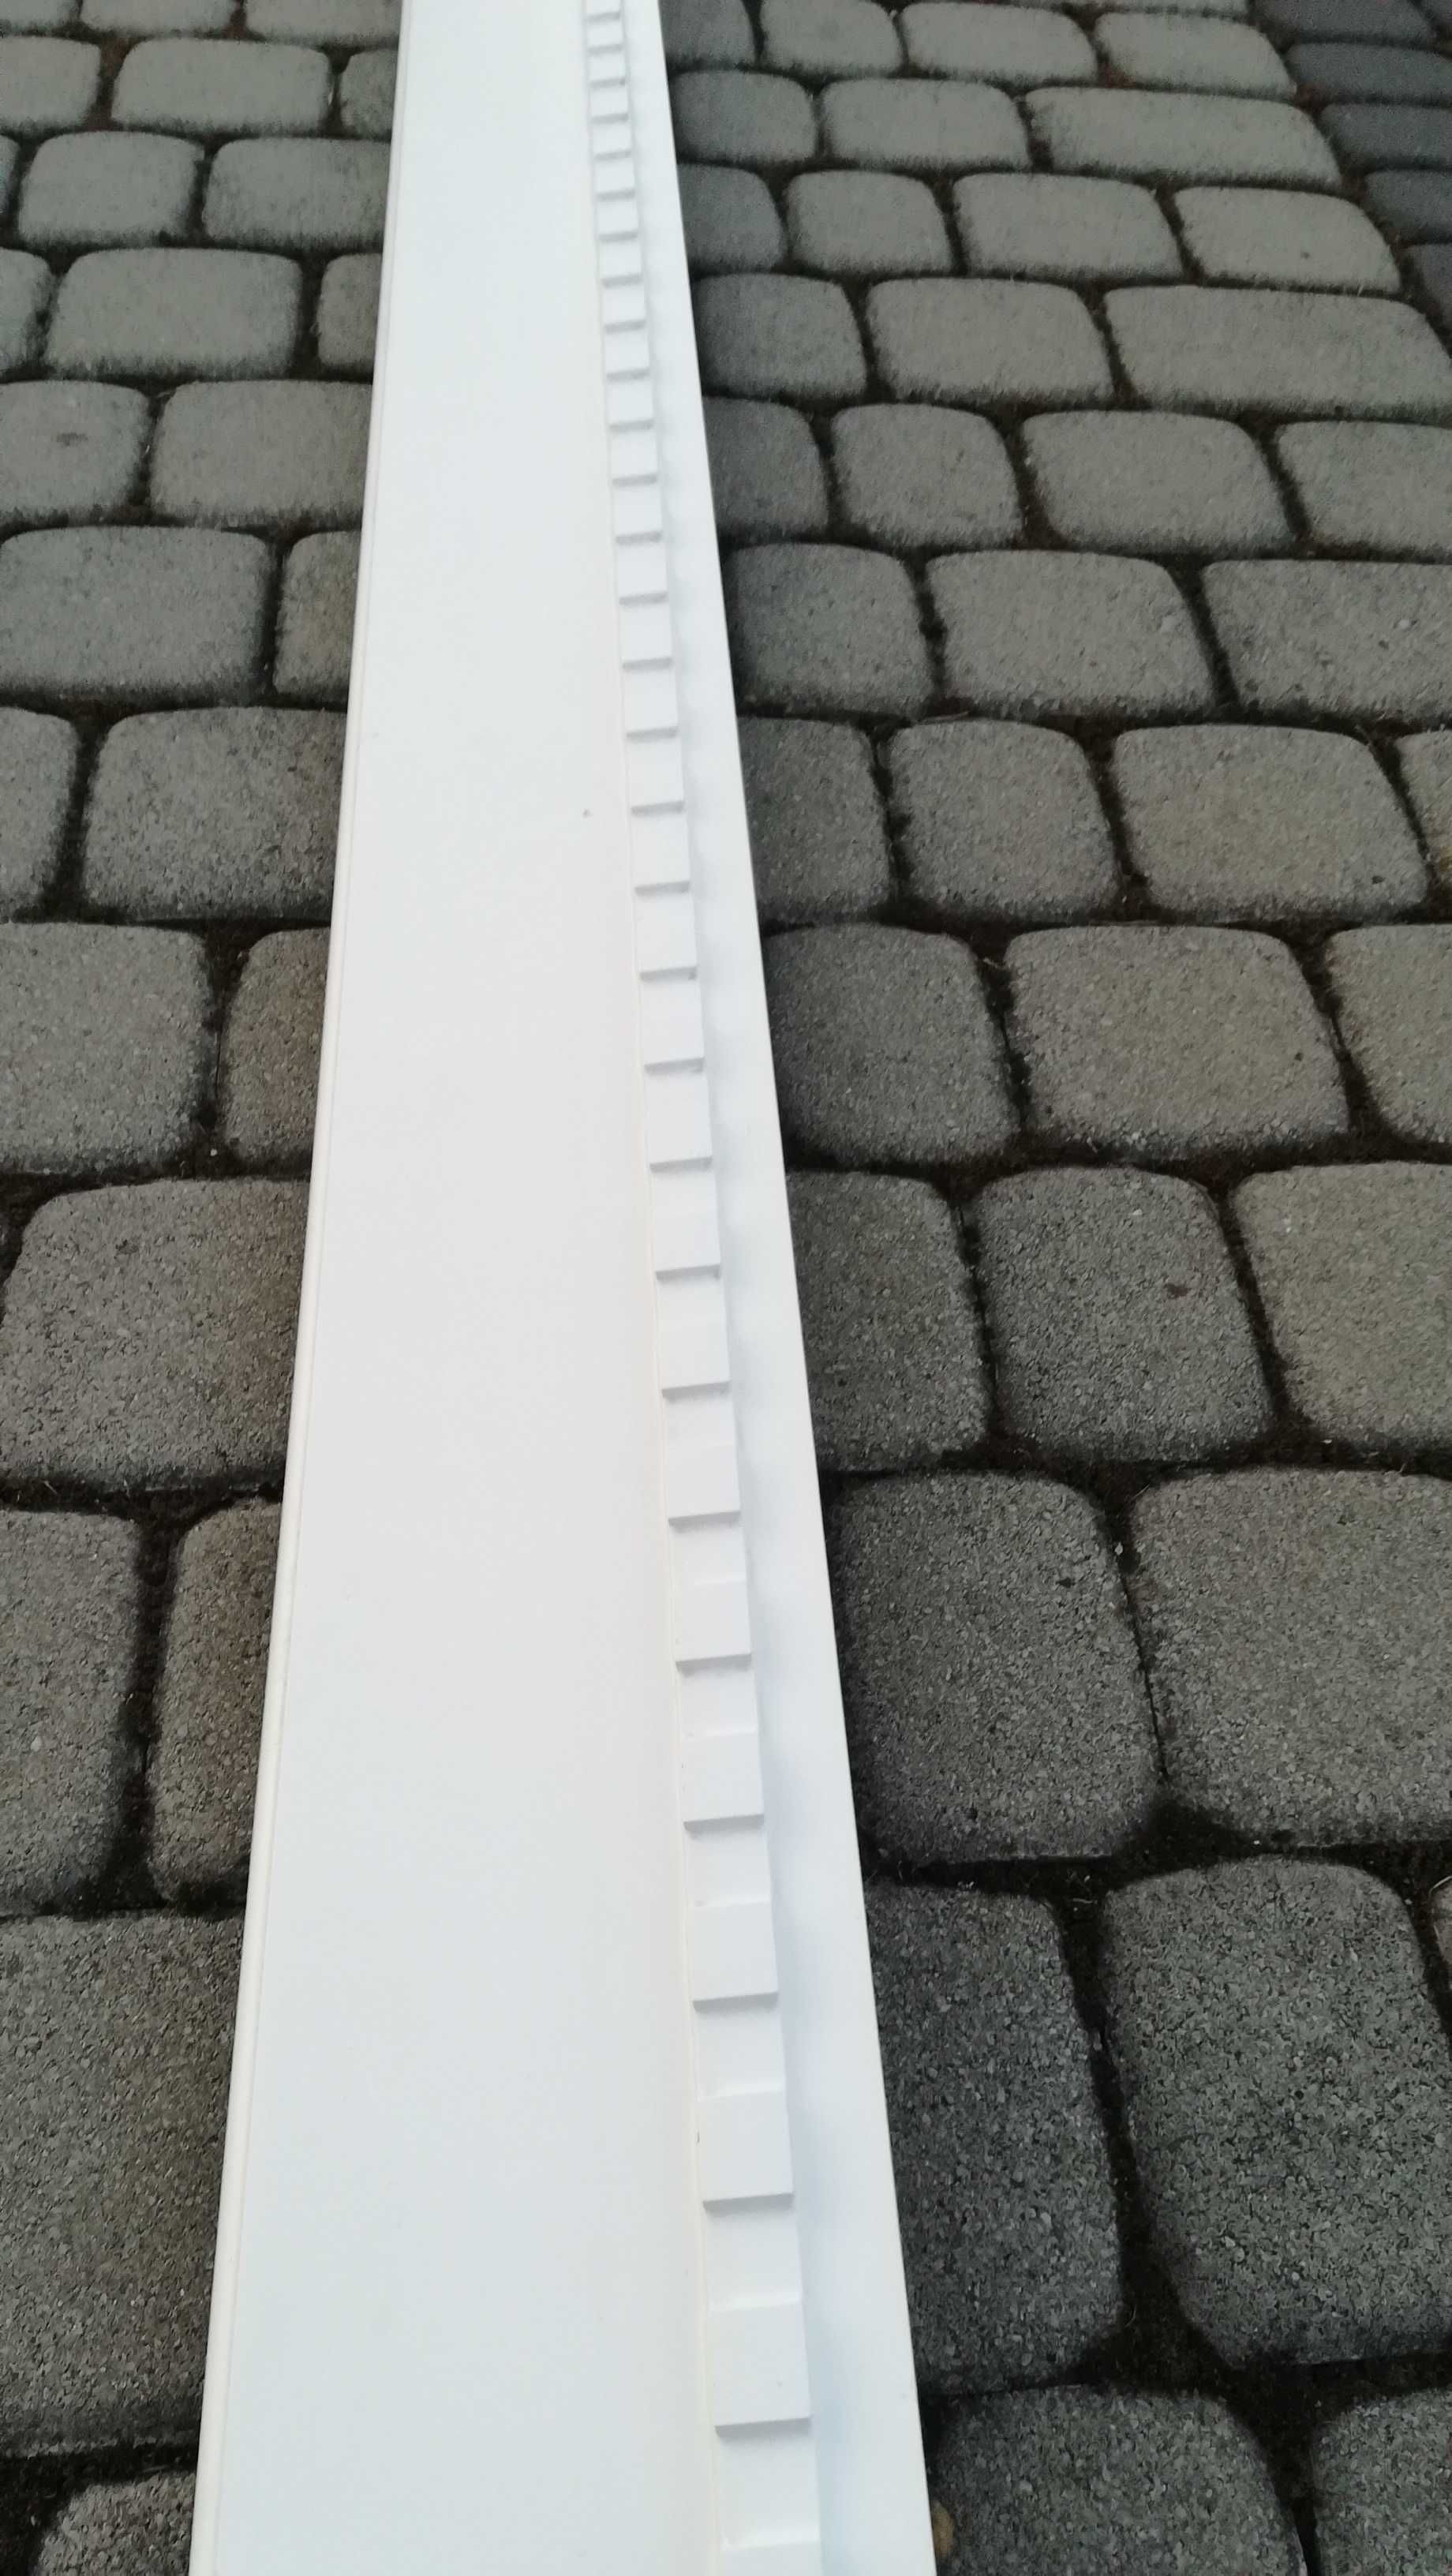 LISTWA meblowa dekoracyjna biała tłoczona MDF 250cm - 4 szt.